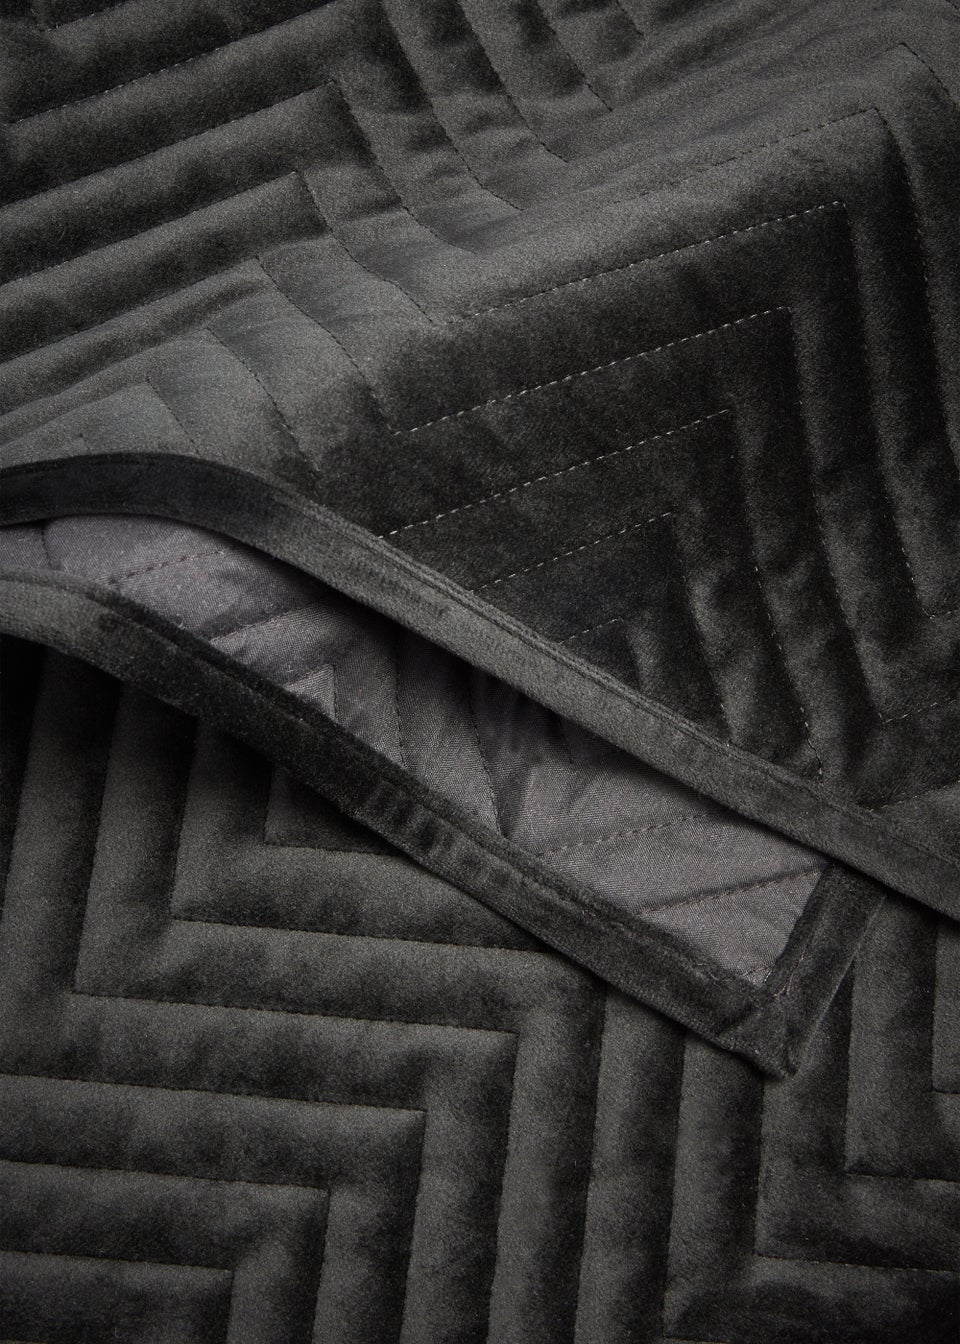 Black Velvet Quilted Bedspread (235cm x 235cm)